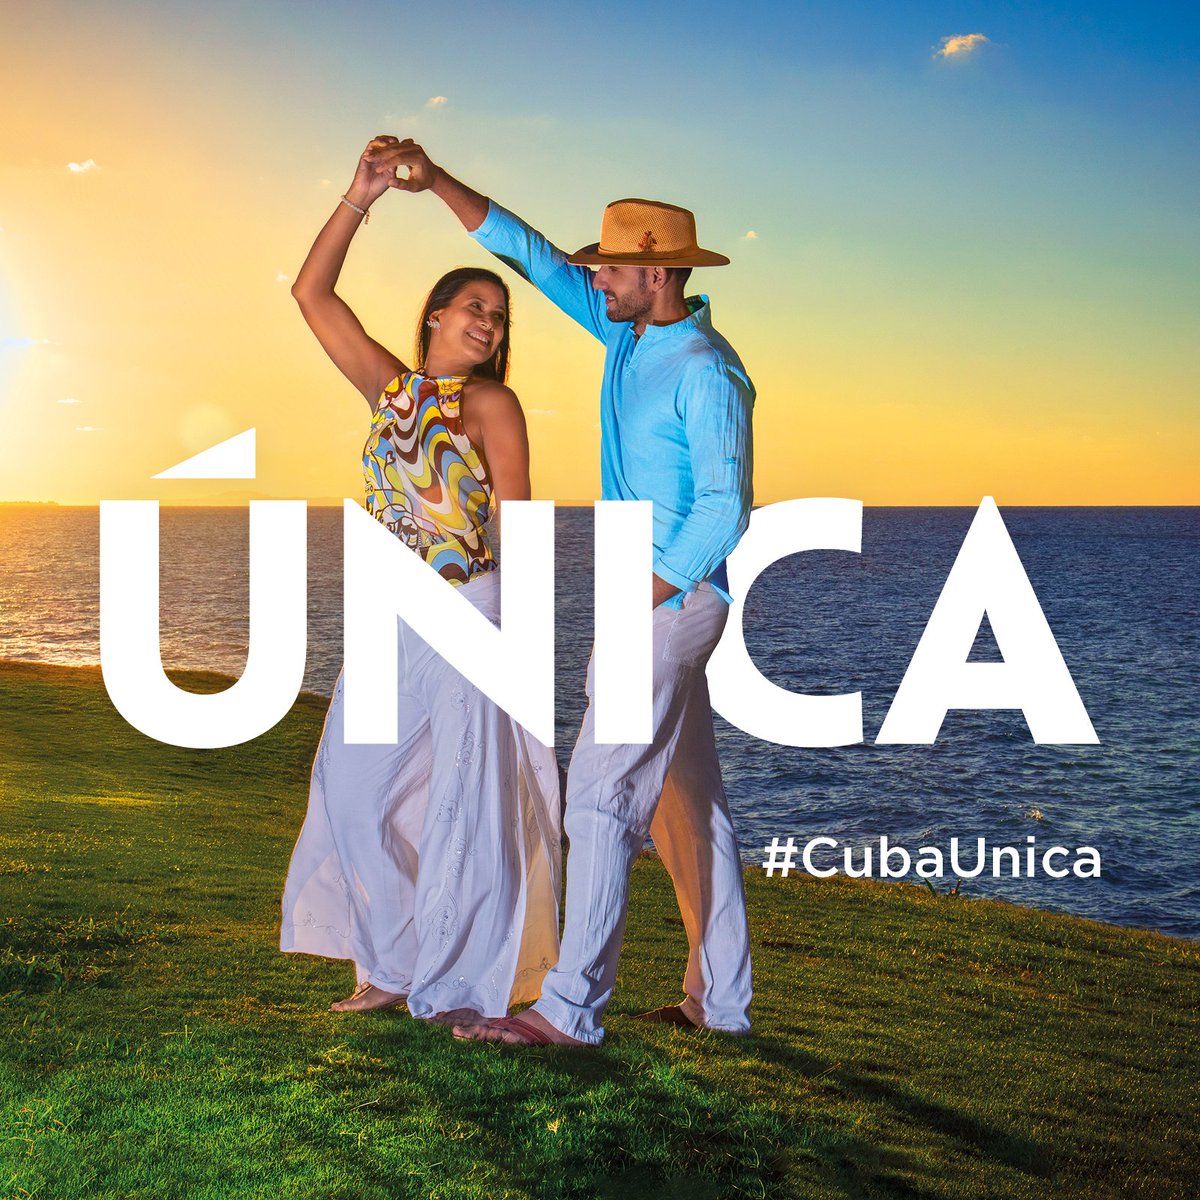 #Cuba
Felicidades a los trabajadores del #Turismo en su día 4demarzo🇨🇺